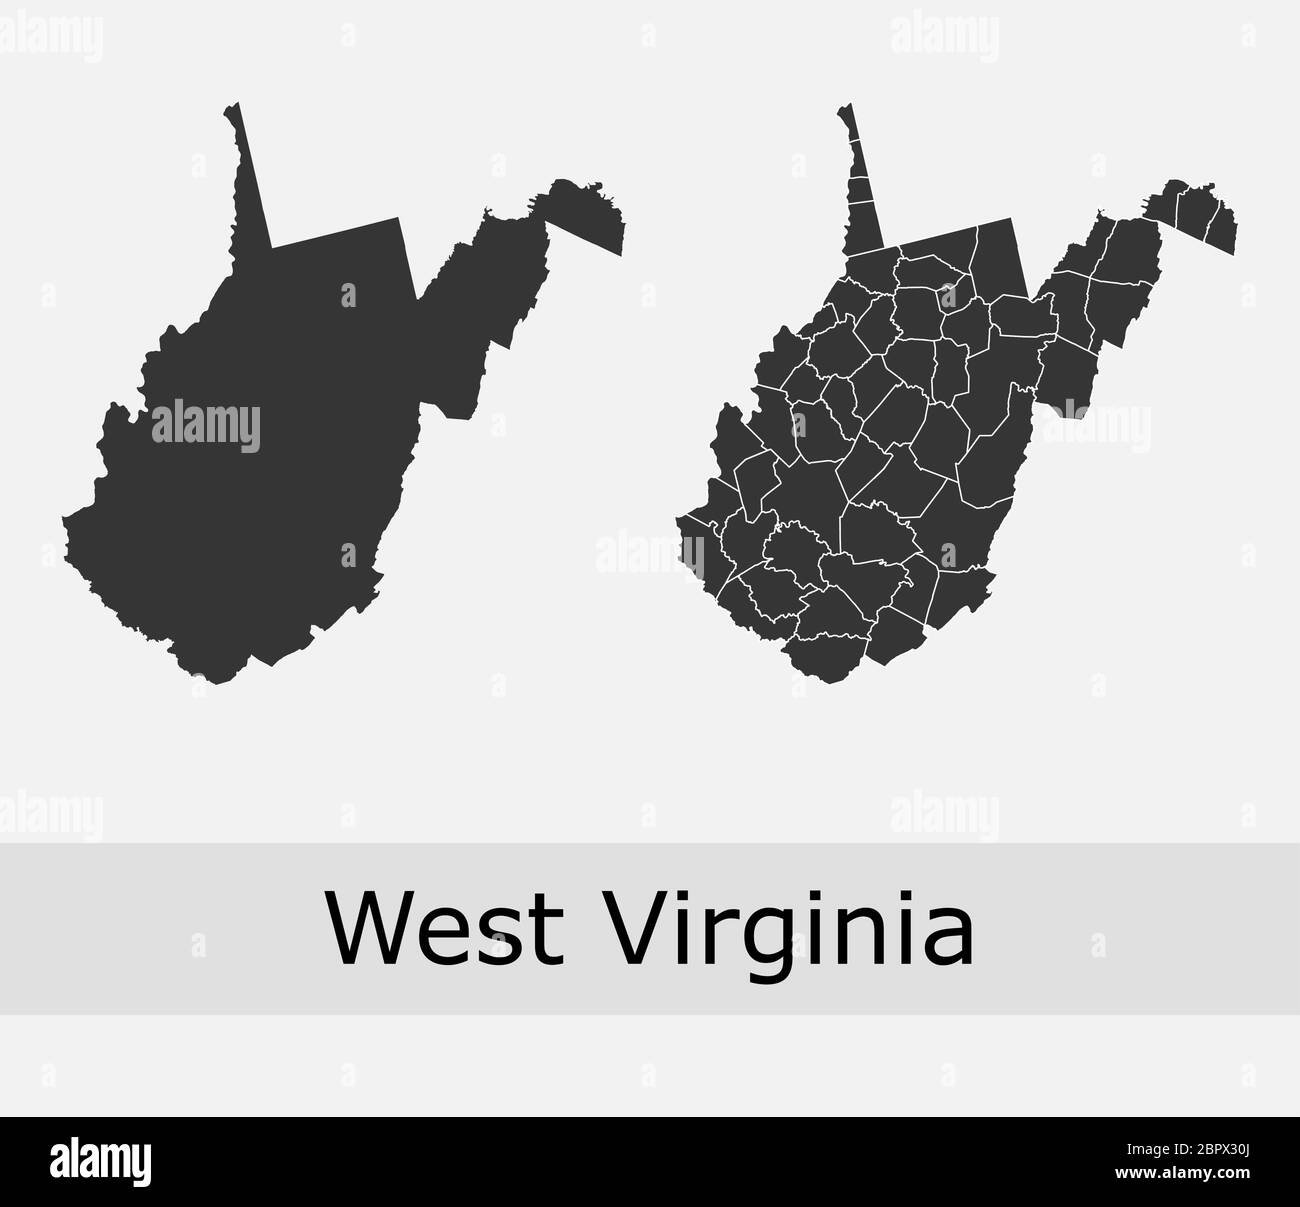 West Virginia Karten Vektor skizzieren Grafschaften, Townships, Regionen, Gemeinden, Abteilungen, Grenzen Stock Vektor